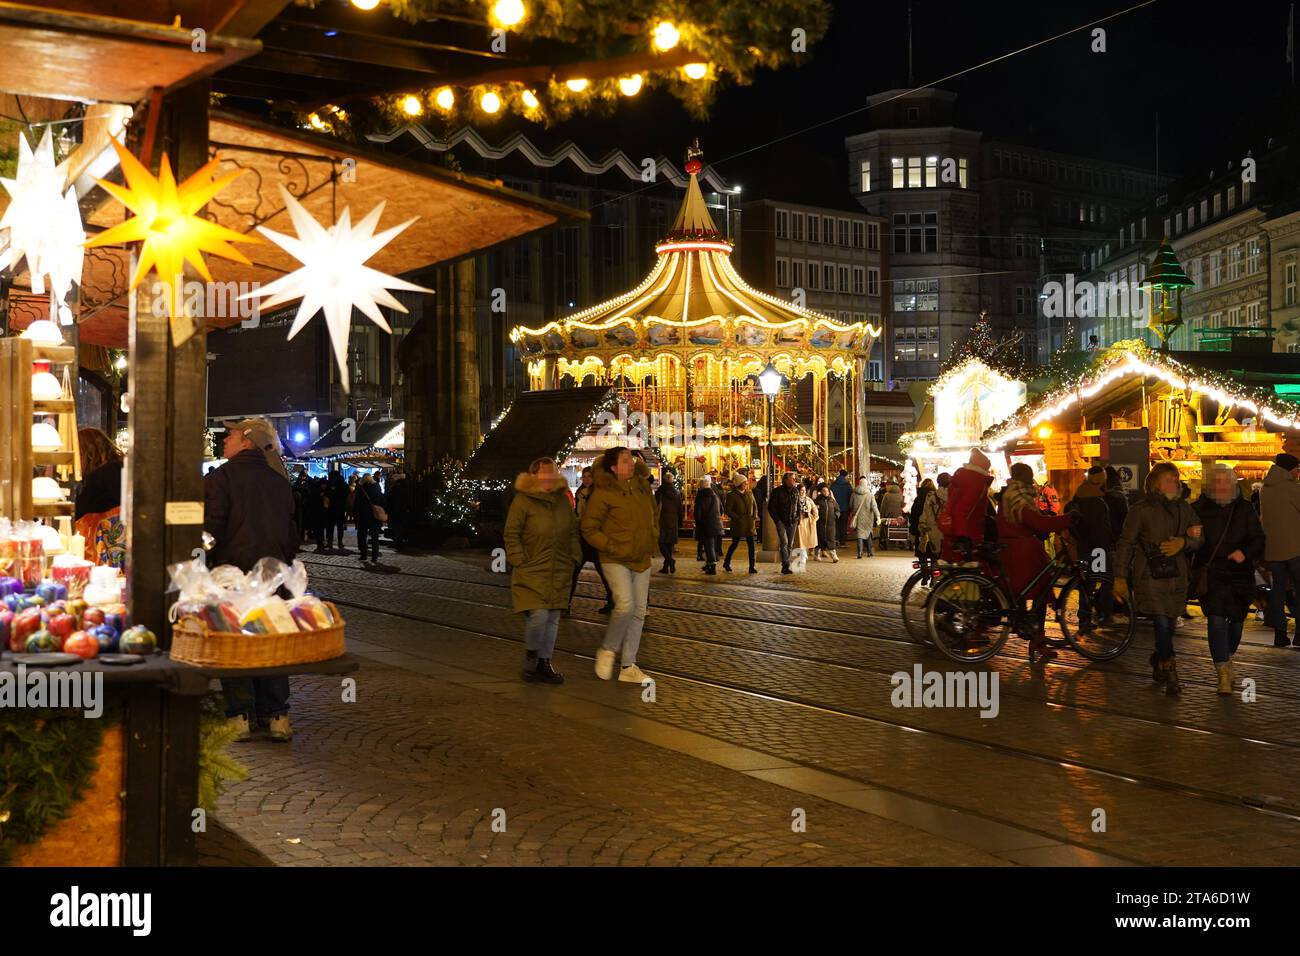 Der Weihnachtsmarkt auf dem Bremer Marktplatz. *** Der Weihnachtsmarkt auf dem Bremens Market Square Credit: Imago/Alamy Live News Stockfoto